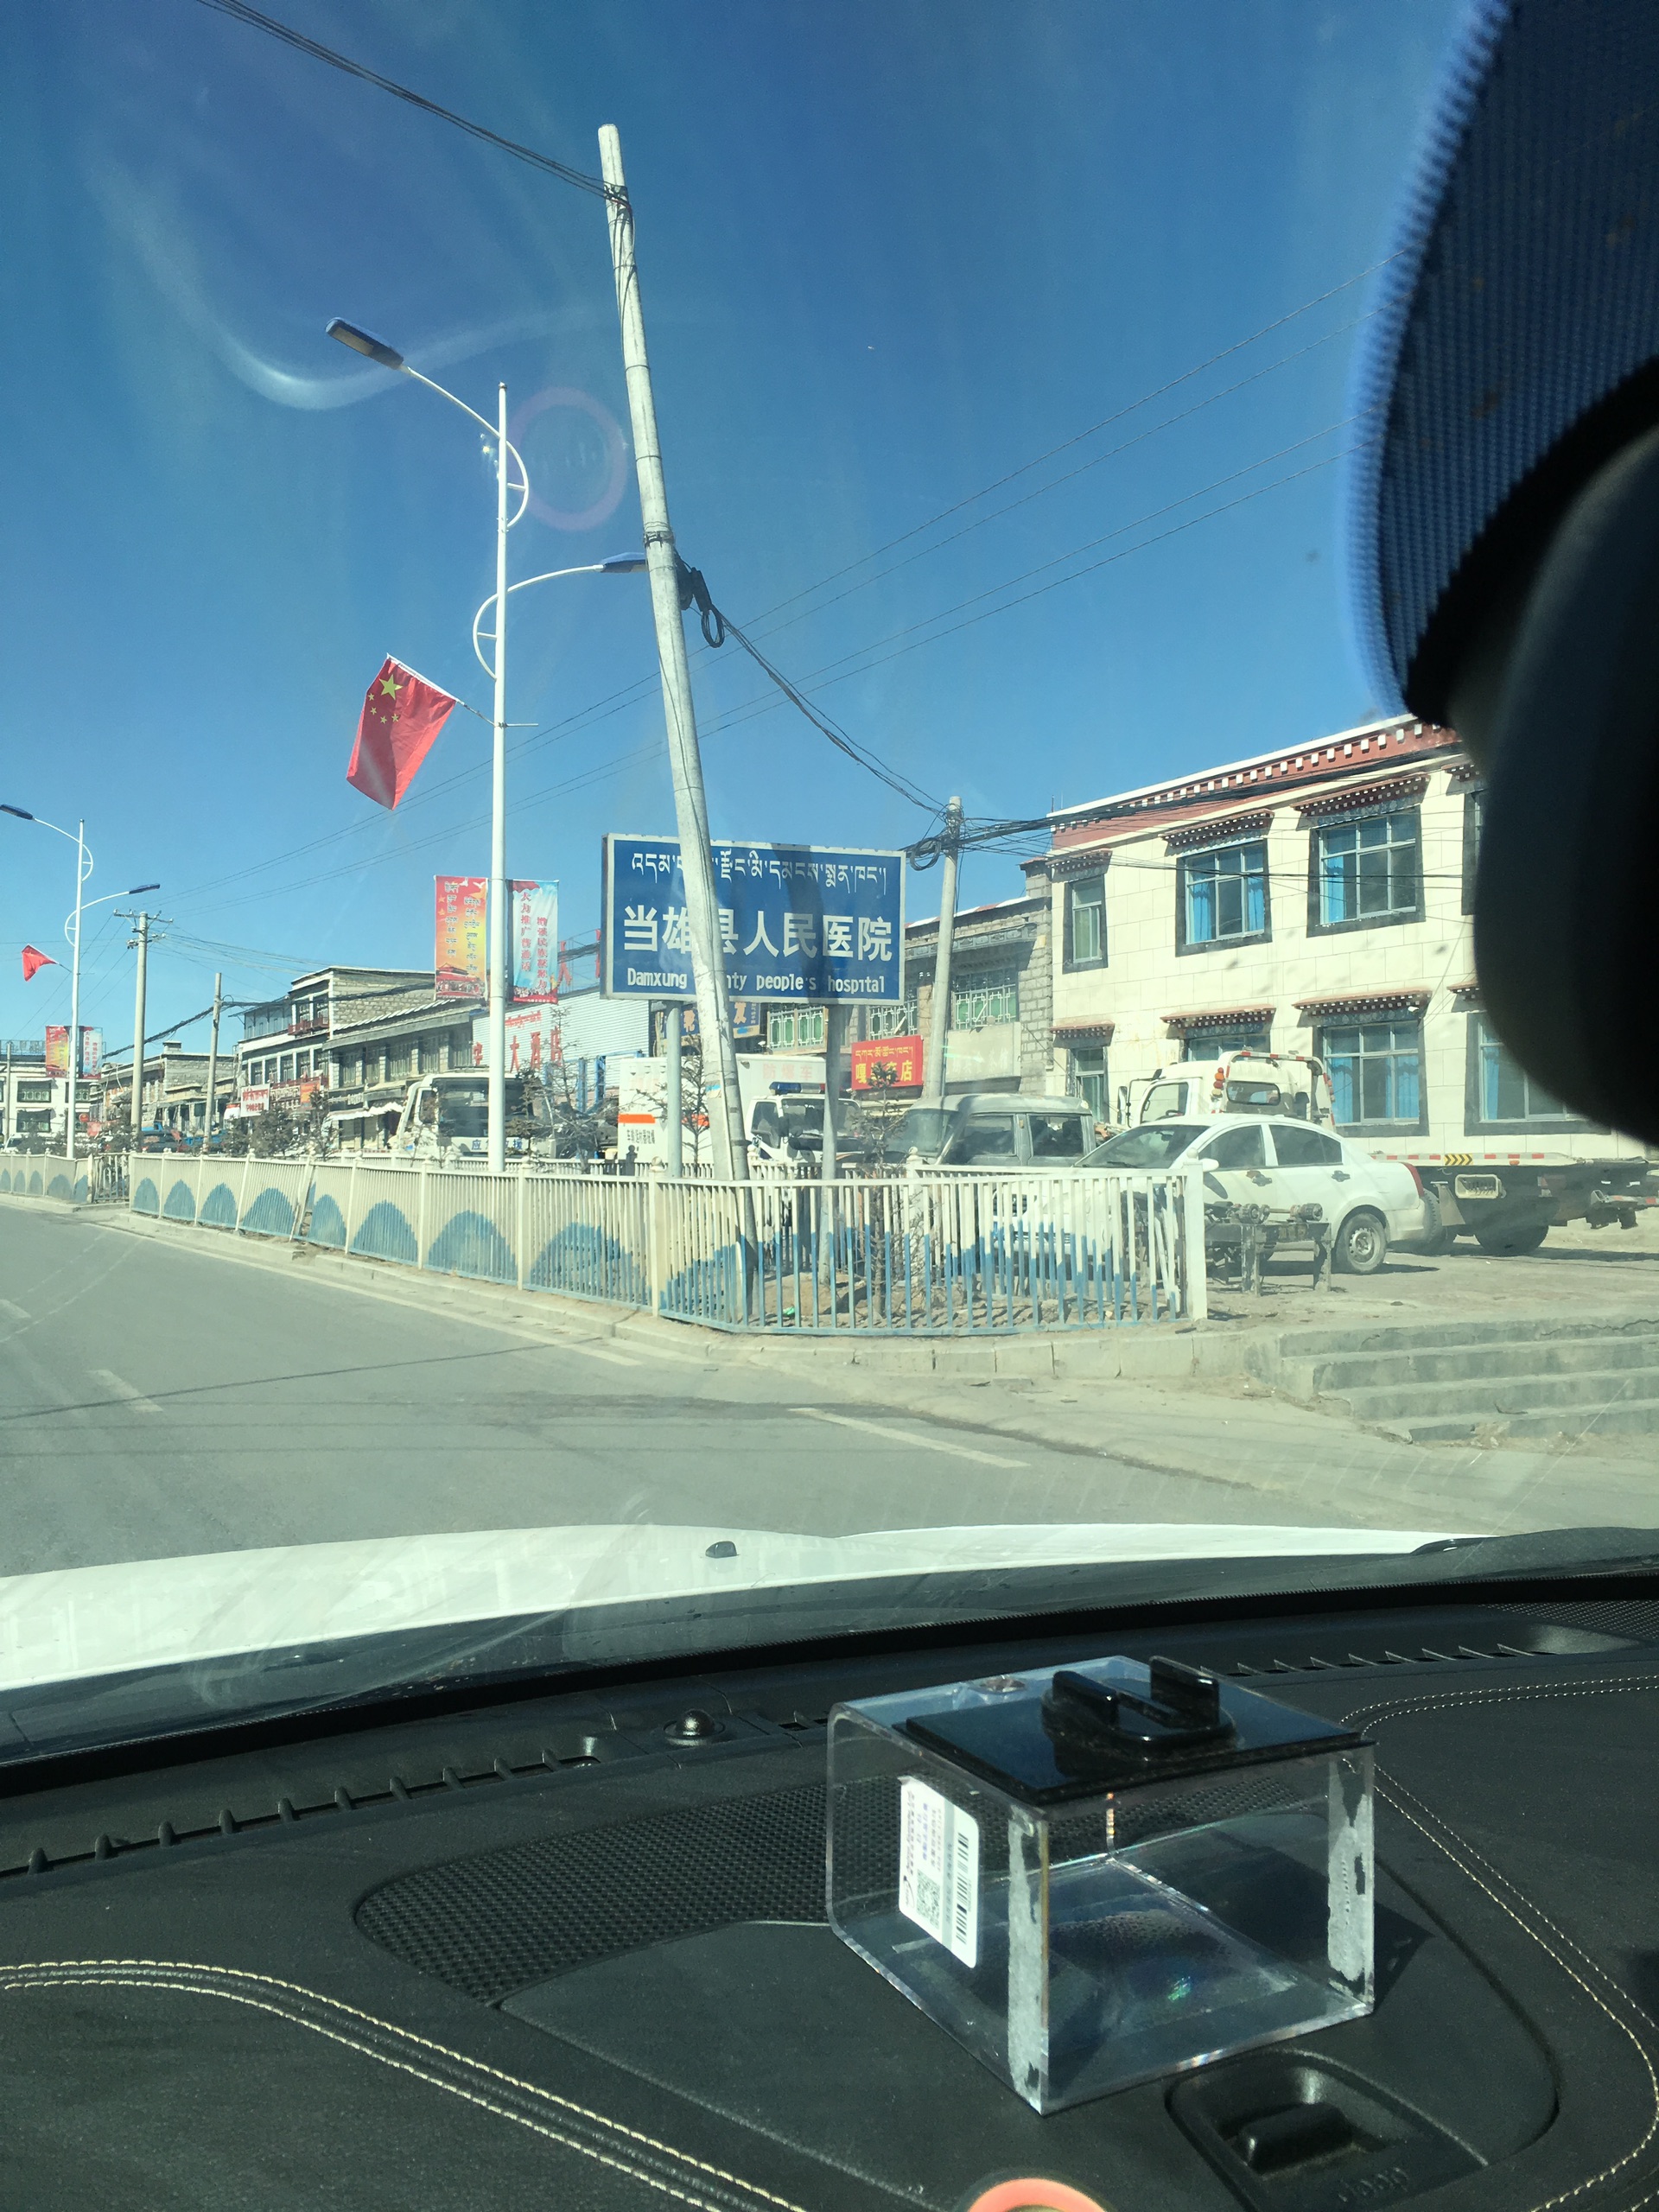 西藏之行的30天内，我一个人自驾，几乎没有人搭车。快到当雄县时主动载了一位女性